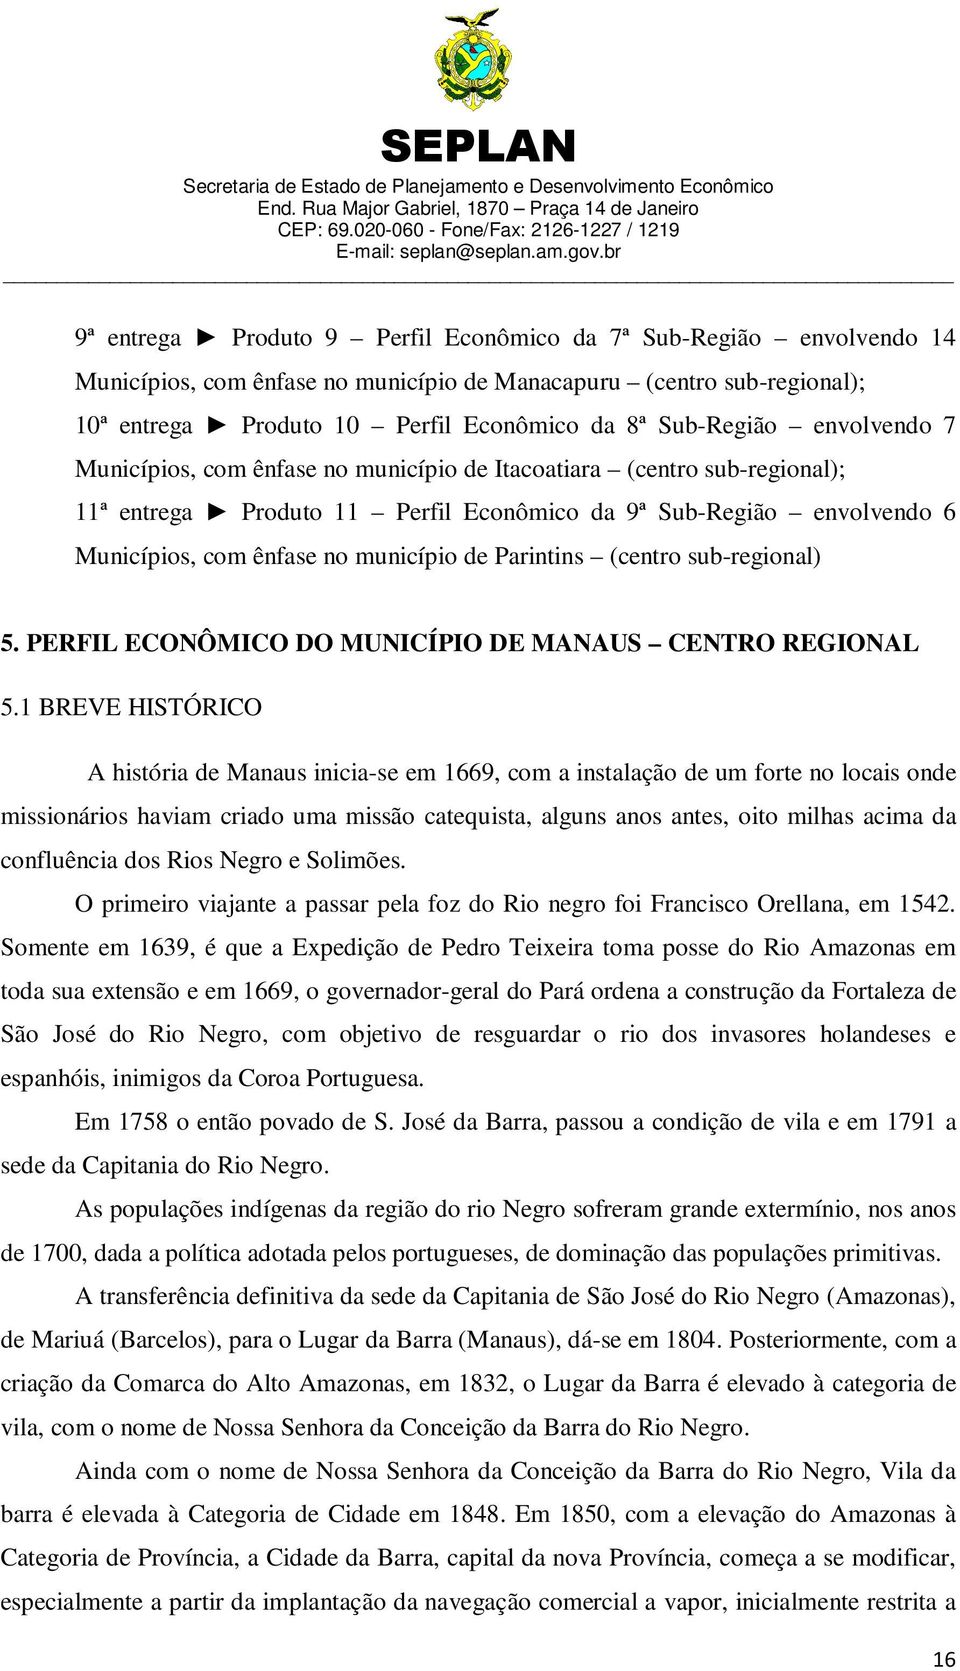 Parintins (centro sub-regional) 5. PERFIL ECONÔMICO DO MUNICÍPIO DE MANAUS CENTRO REGIONAL 5.